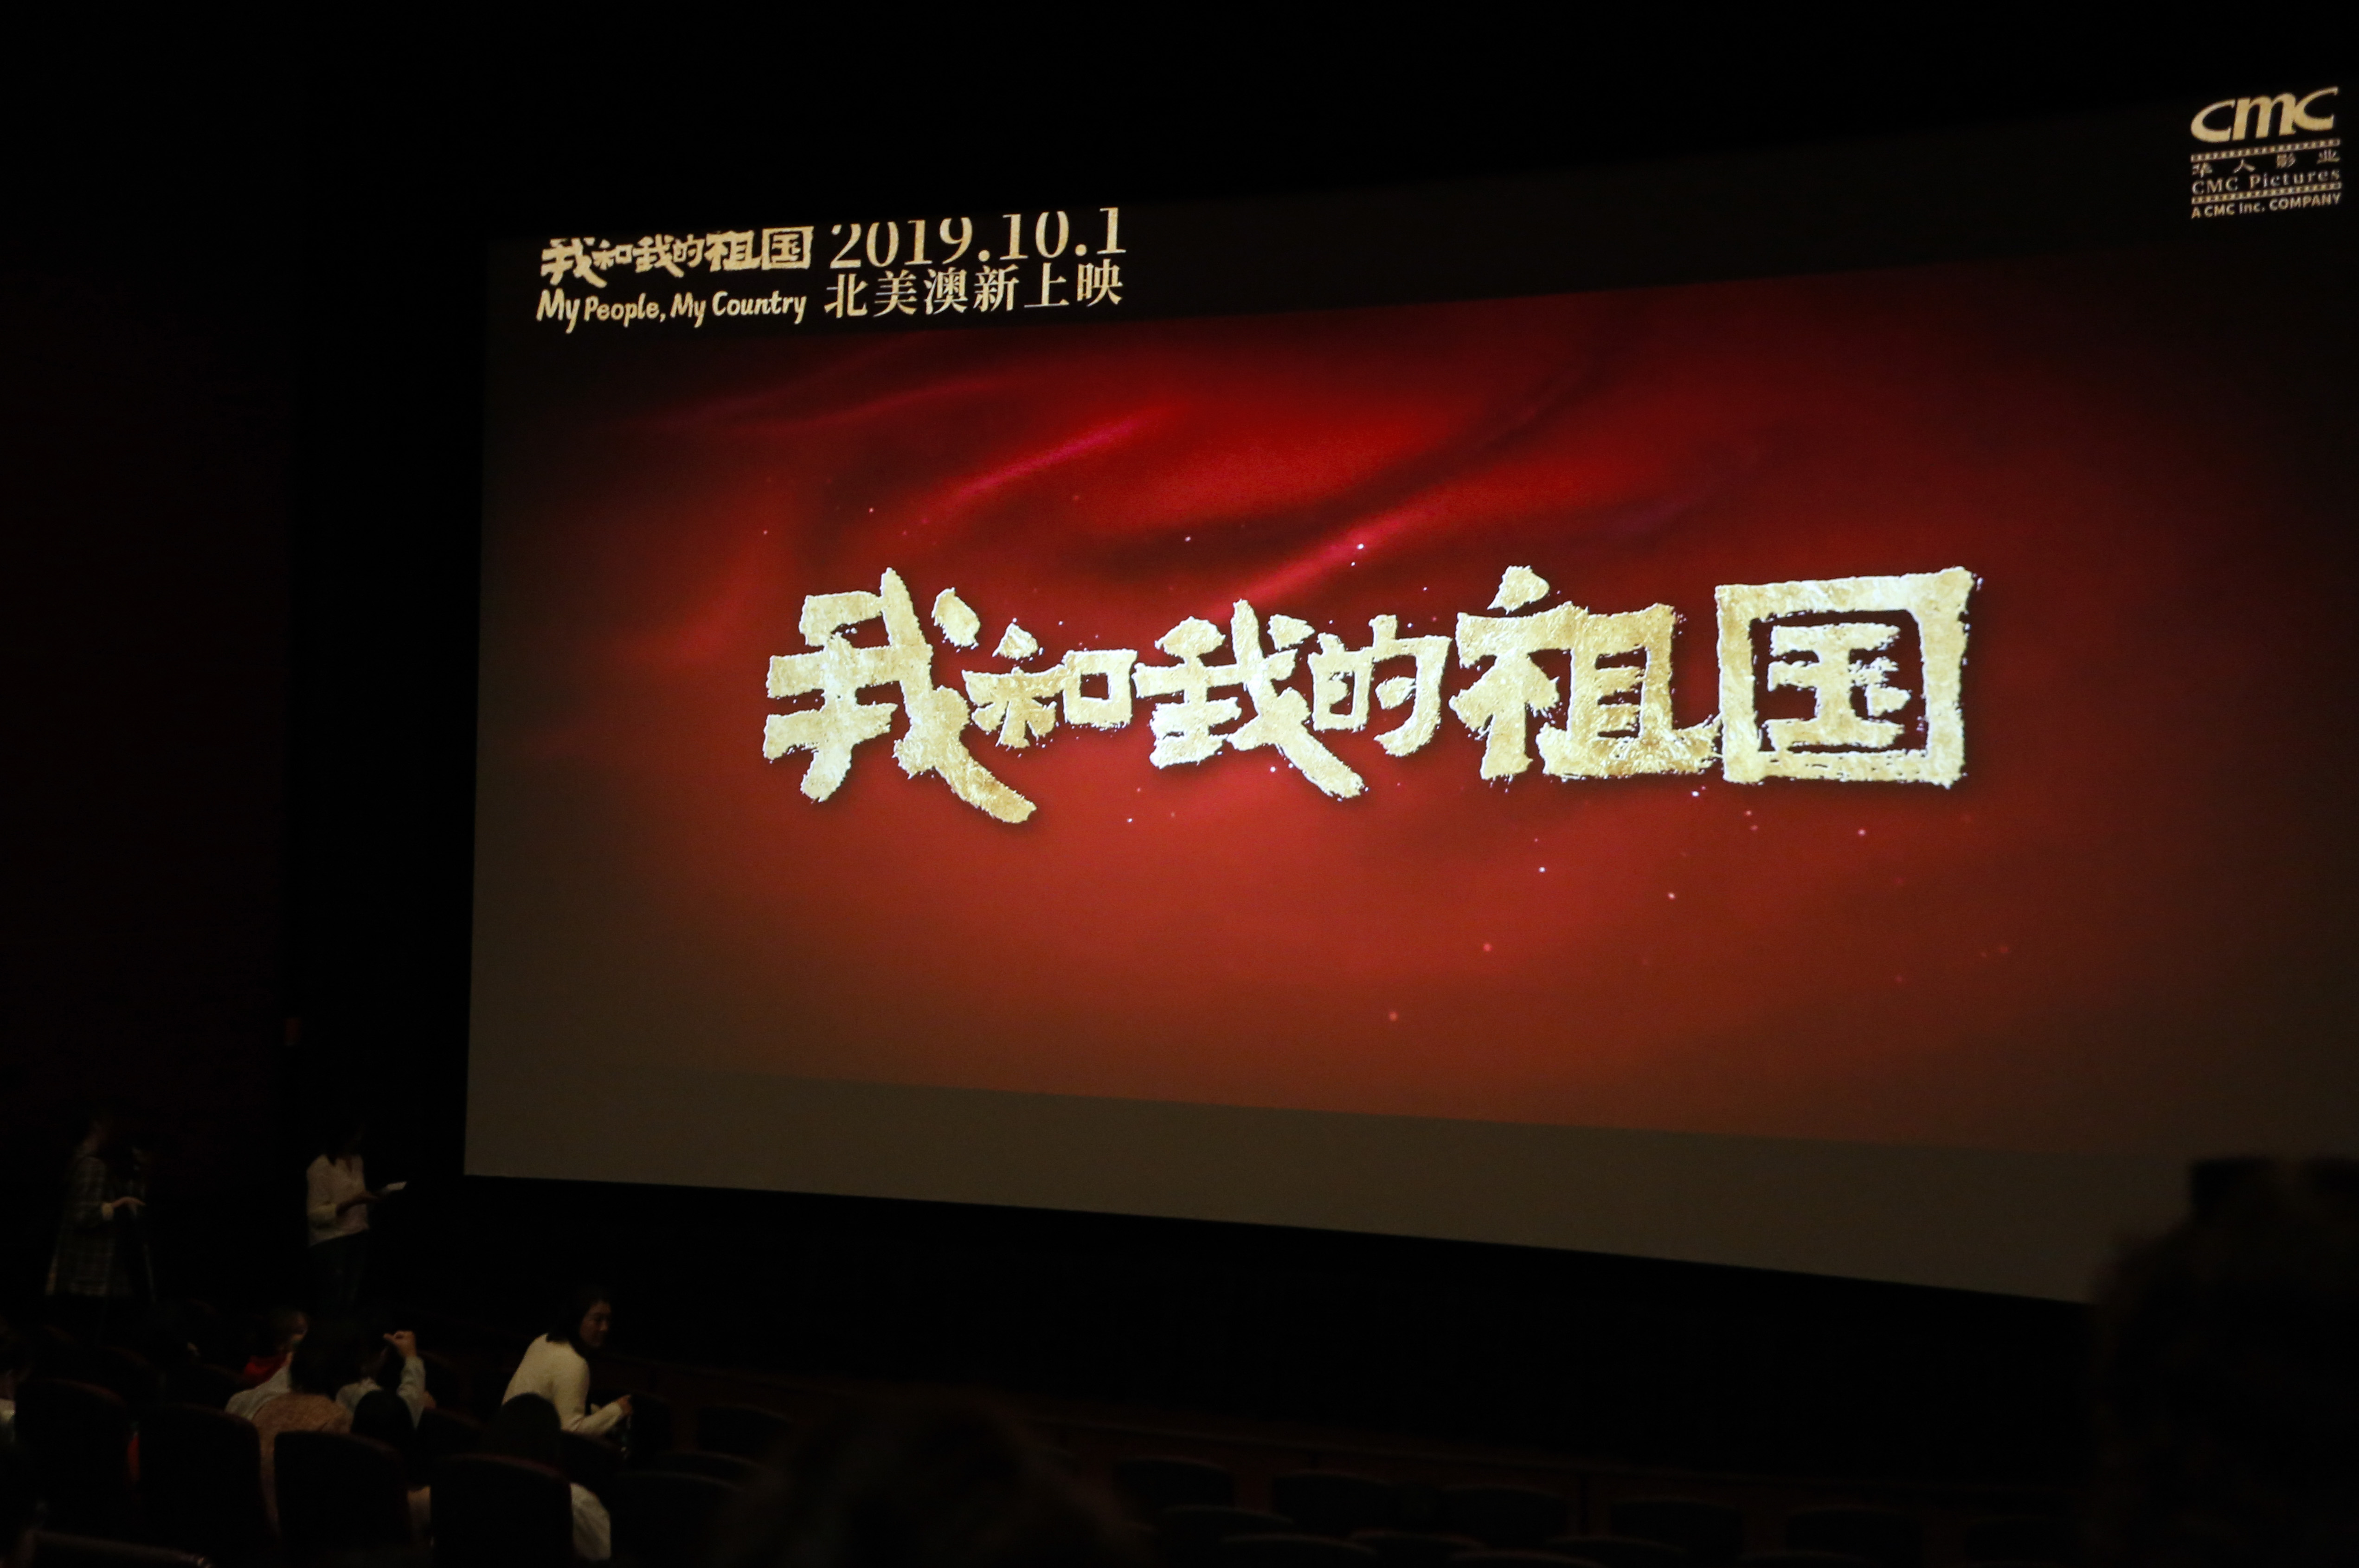 中国・国慶節期間の映画興行収入、史上最高の50億5000万元